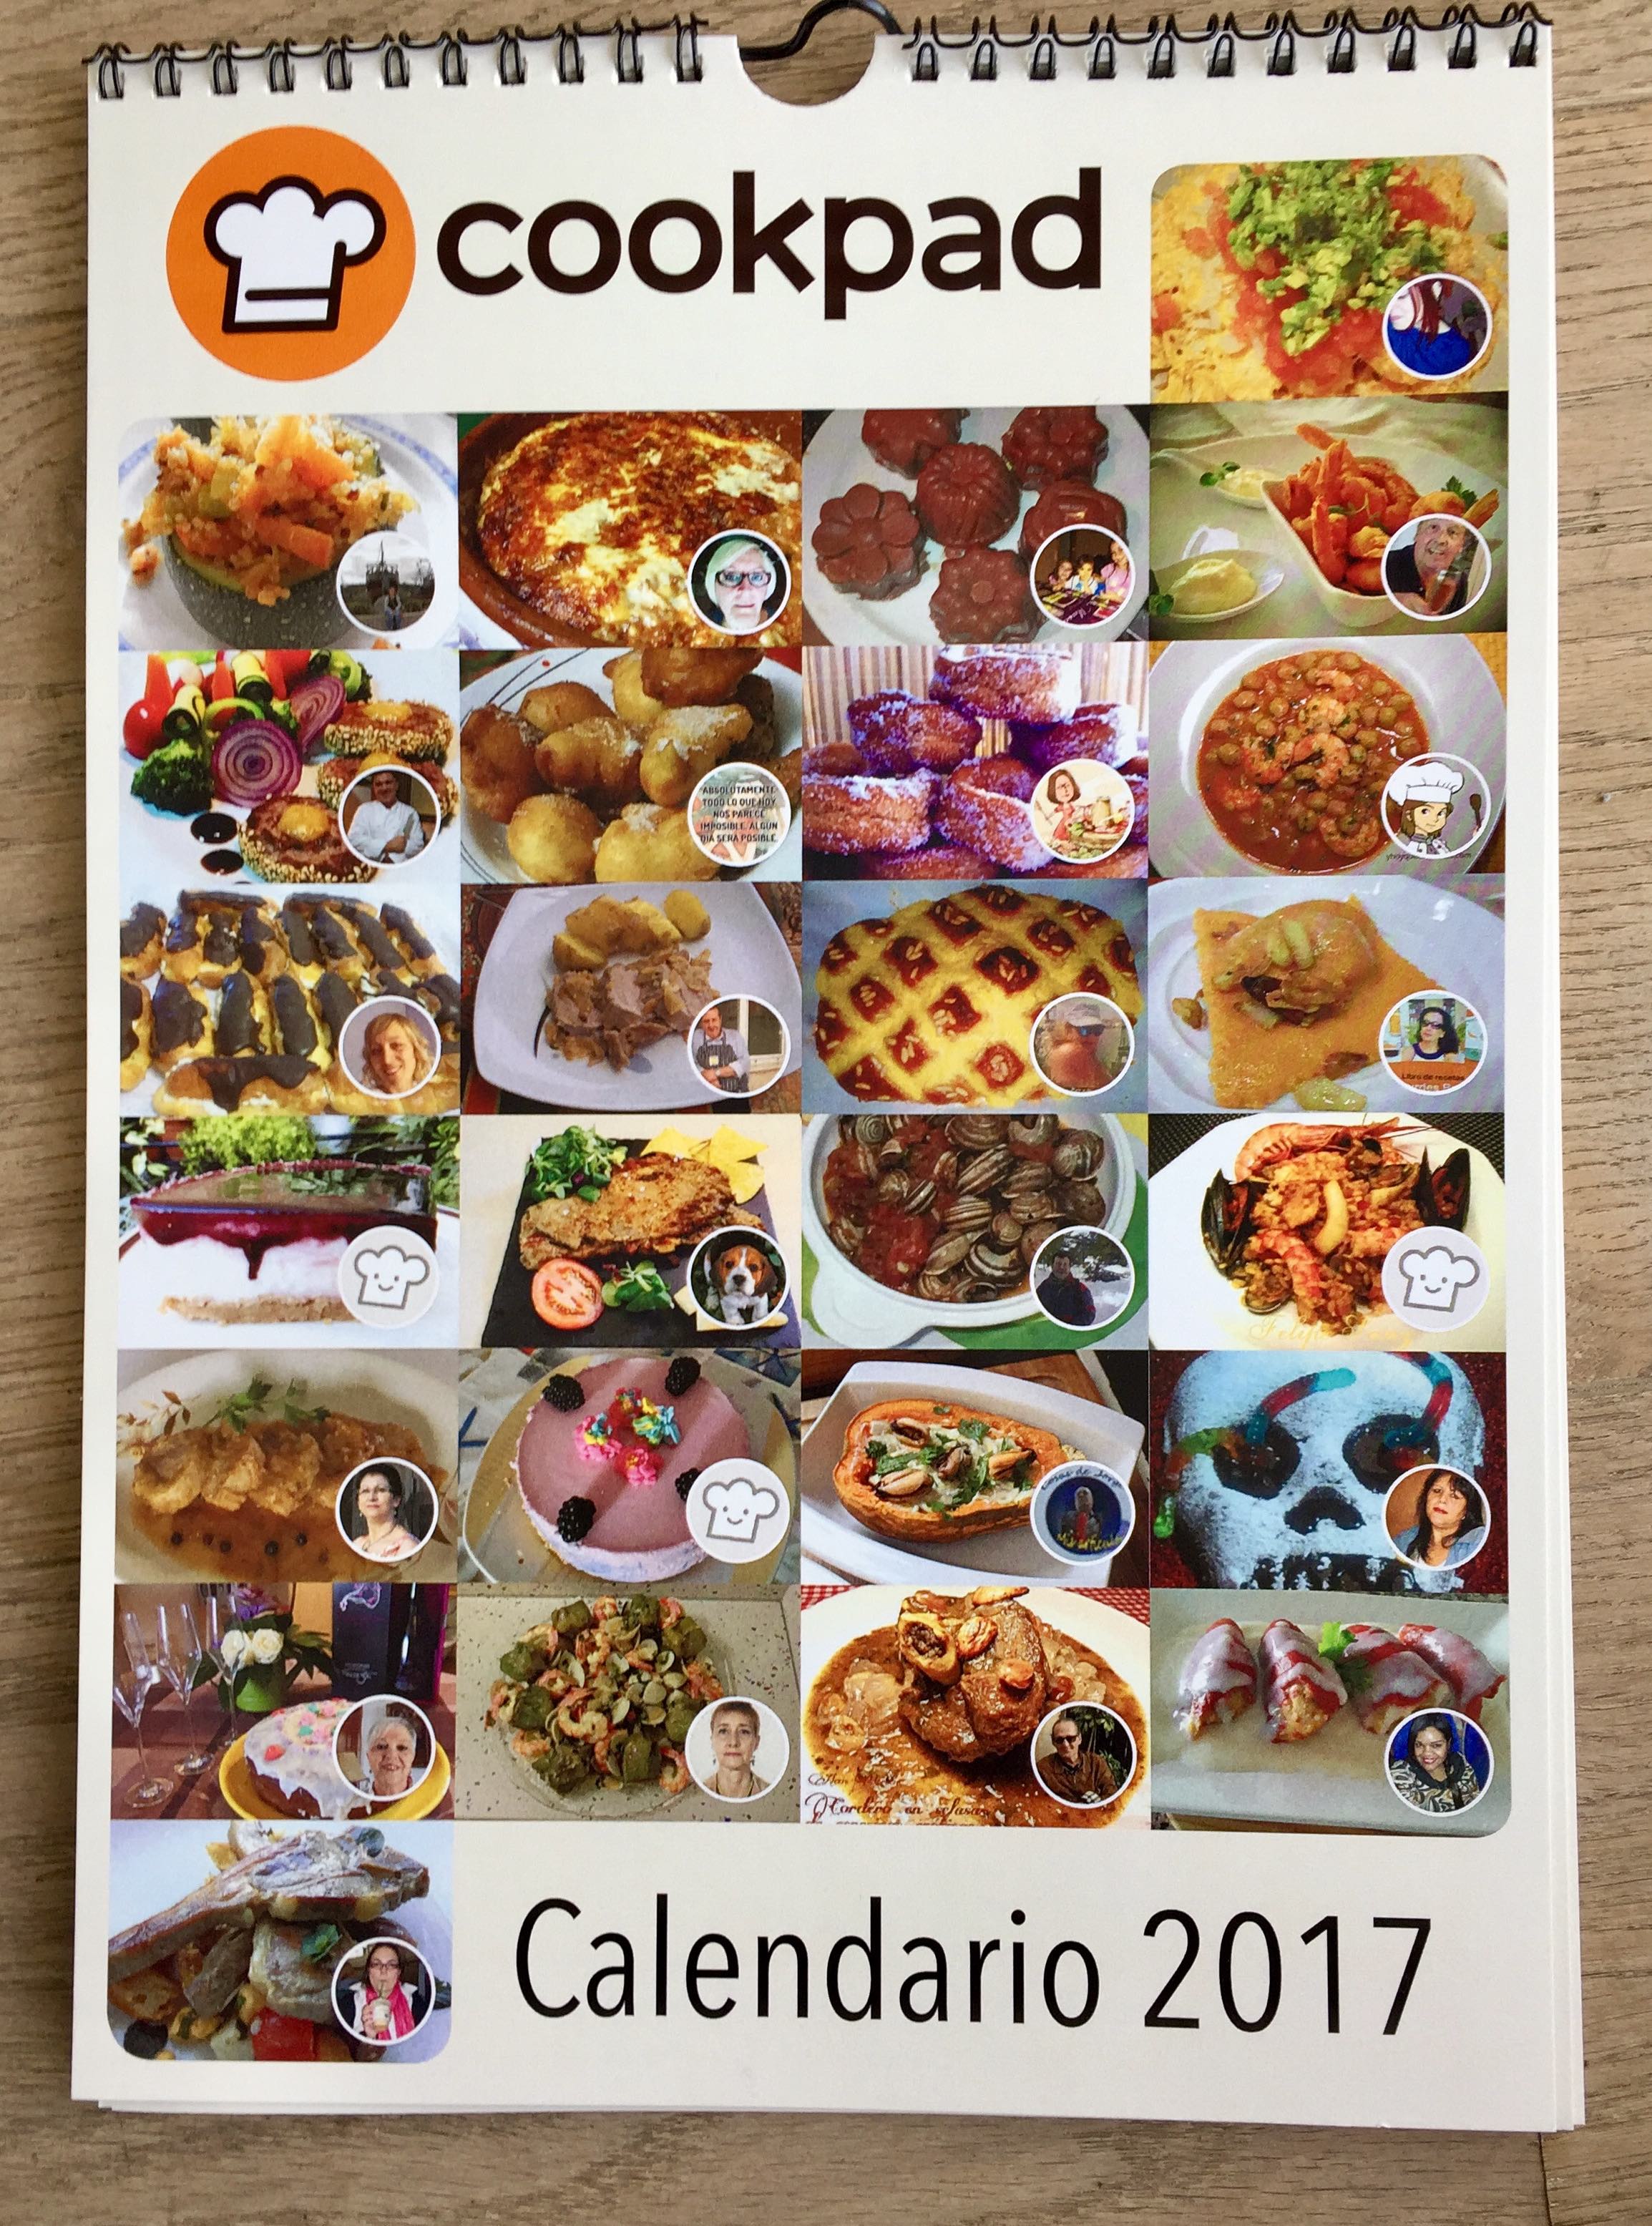 Calendario Cookpad Recetas 2017!! – El blog de Cookpad